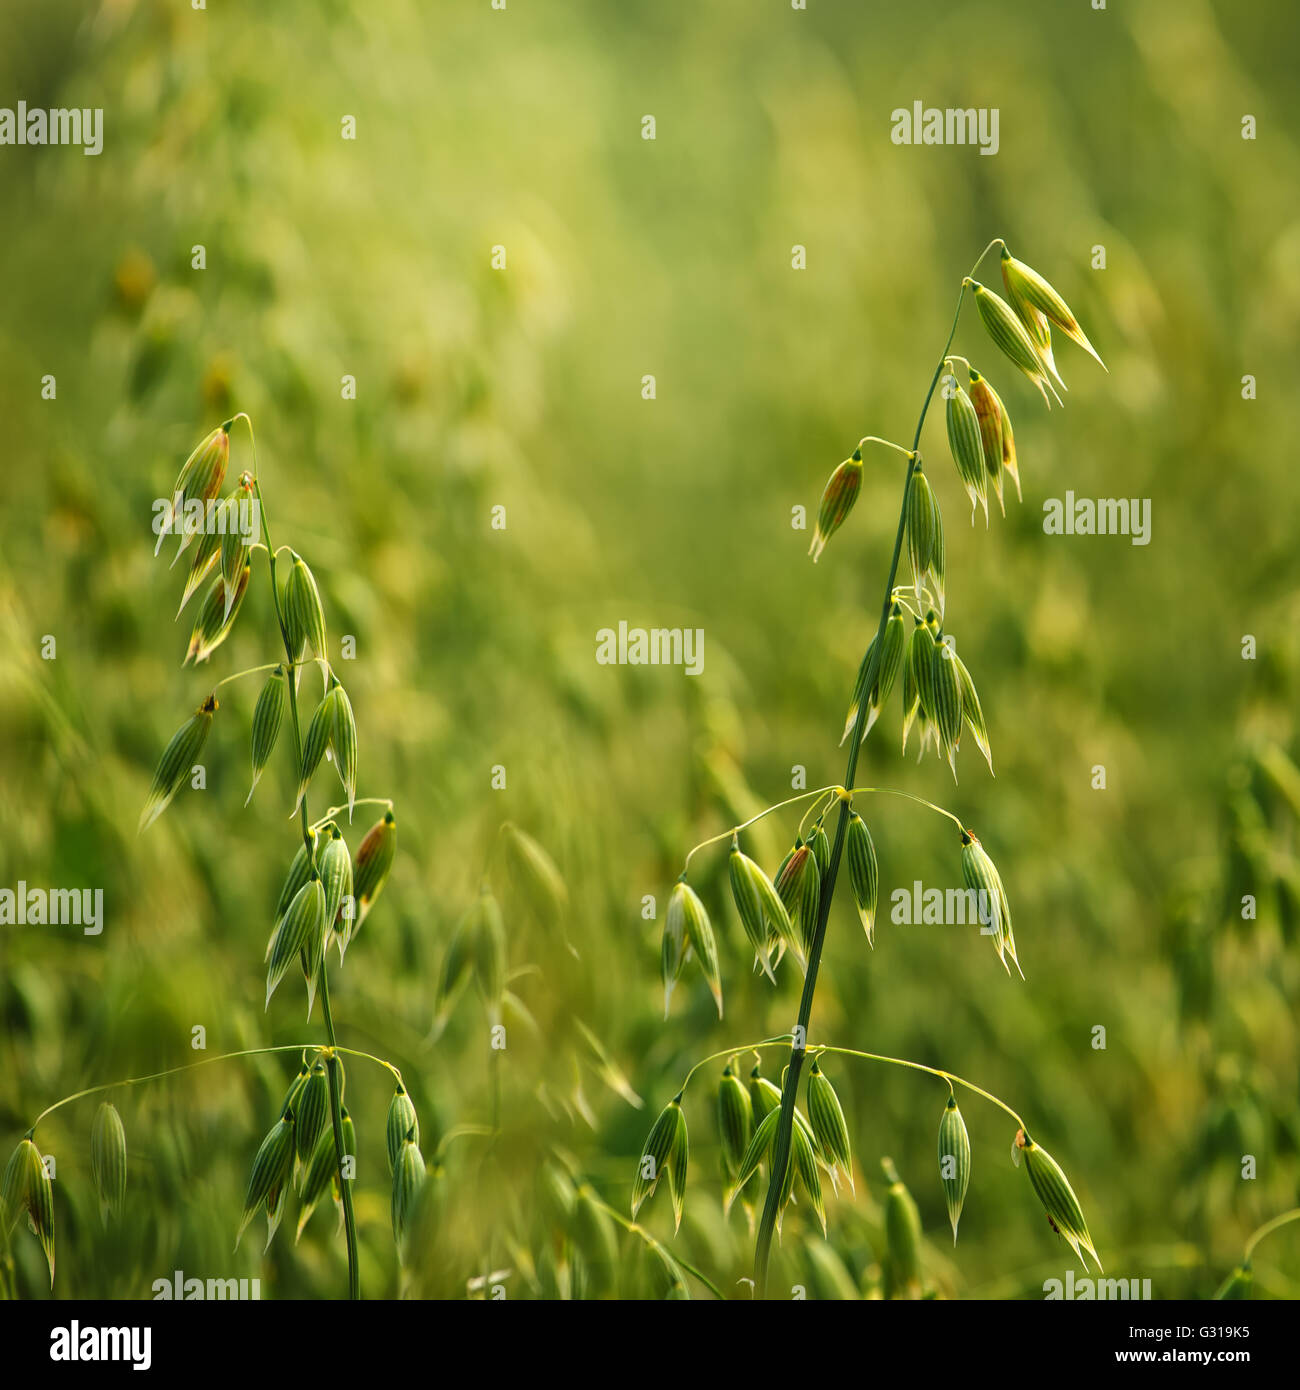 Detalle del campo de avena, verdes cultivos en campo cultivado Foto de stock